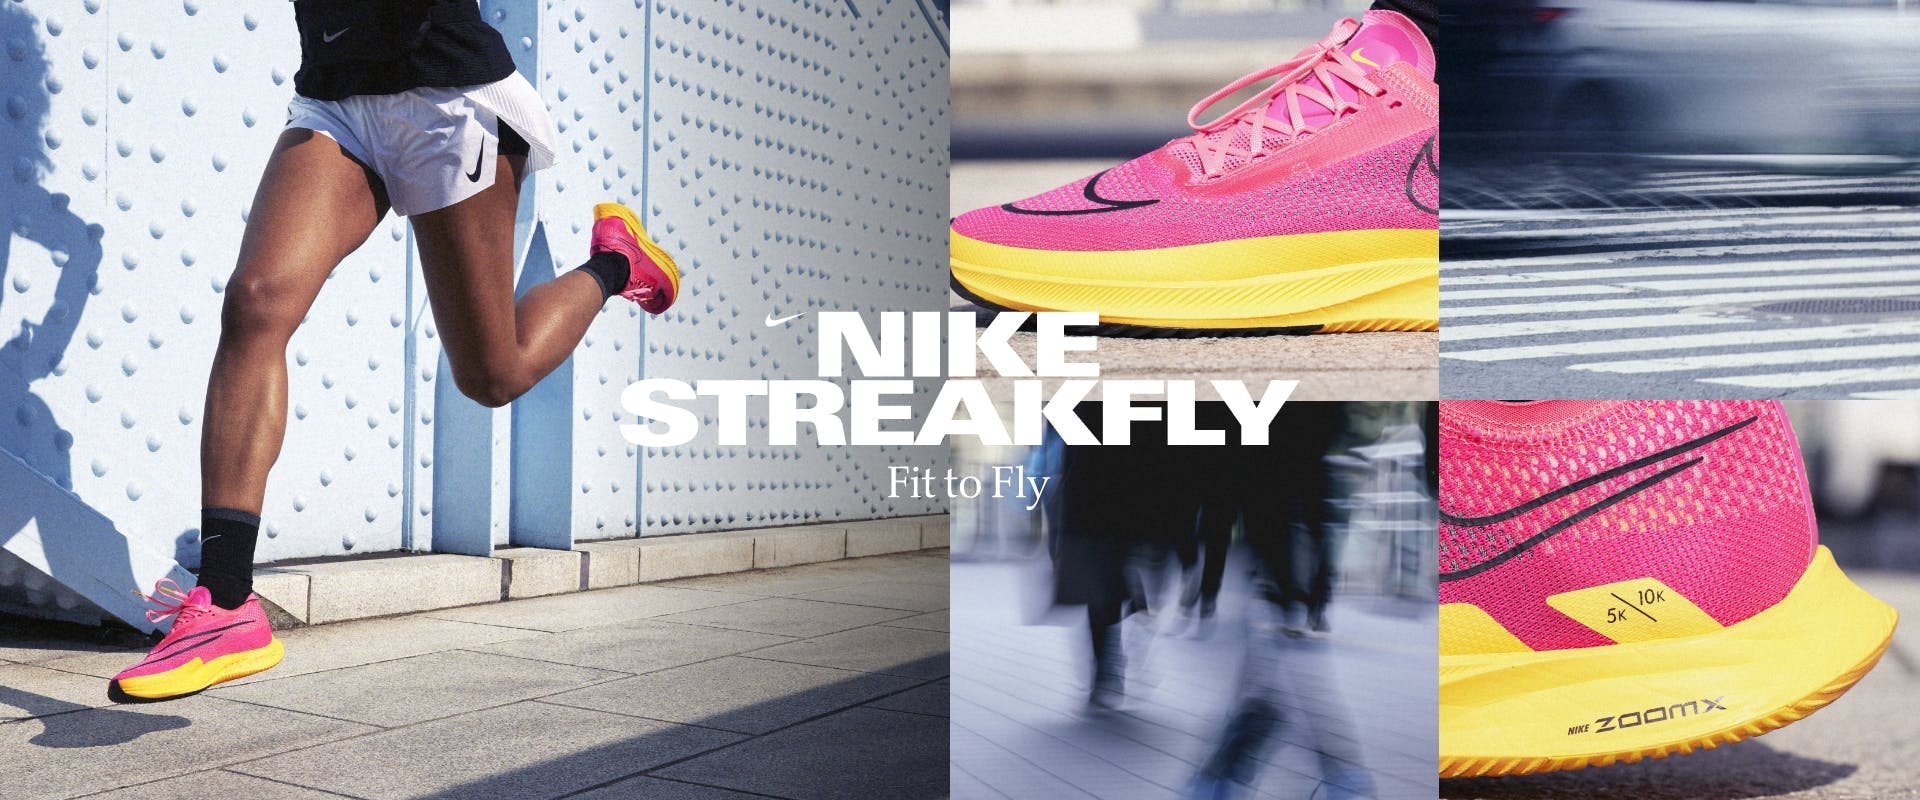 Nike Streakfly